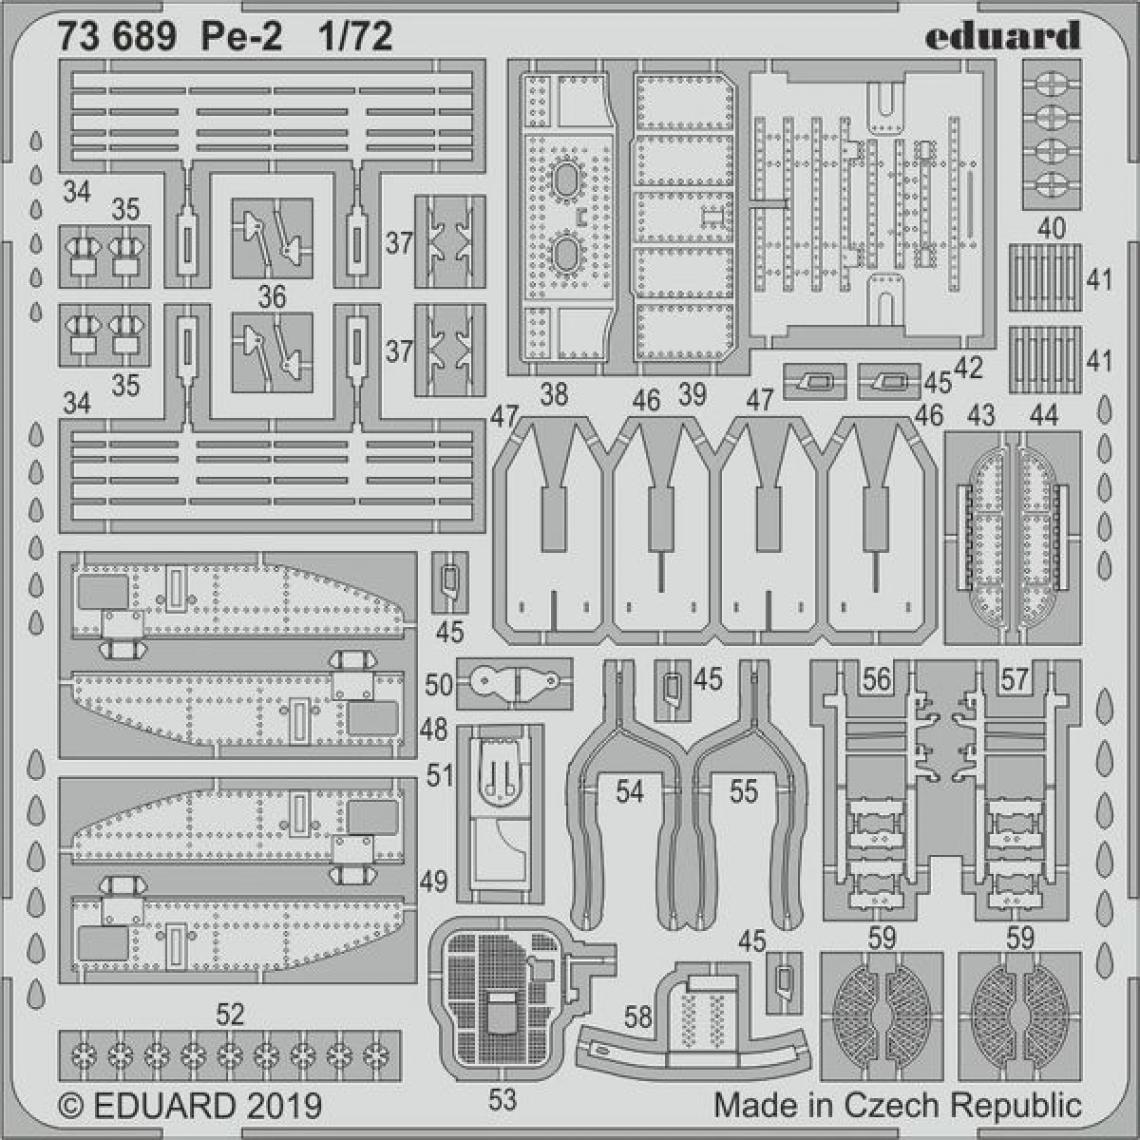 Eduard - Pe-2 for Zvezda - 1:72e - Eduard Accessories - Accessoires et pièces